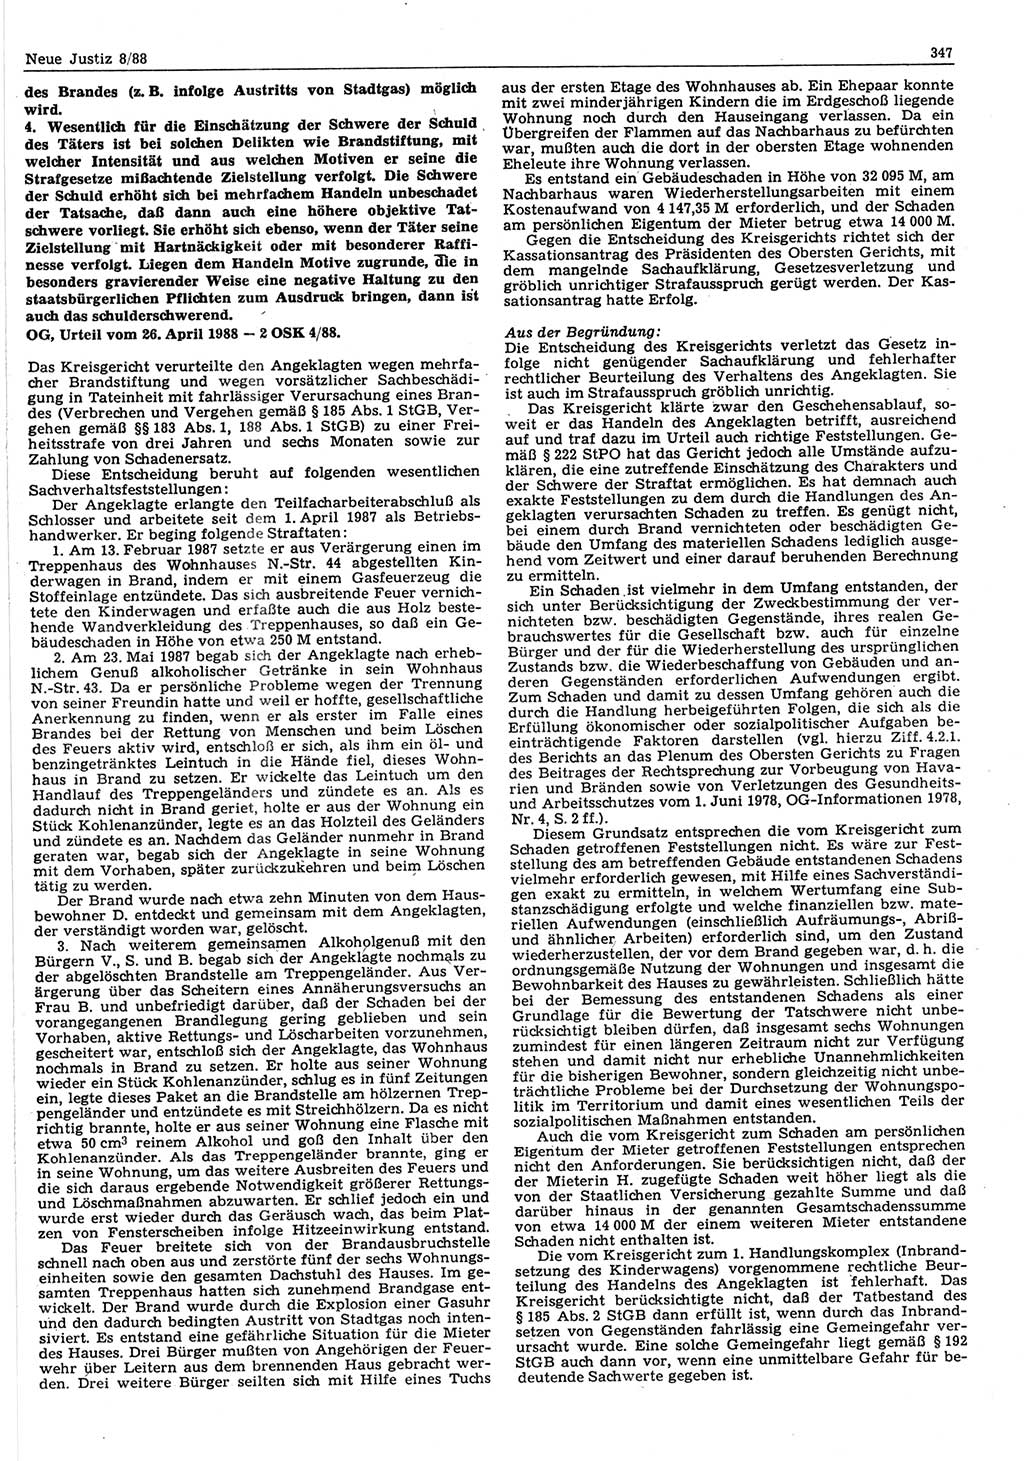 Neue Justiz (NJ), Zeitschrift für sozialistisches Recht und Gesetzlichkeit [Deutsche Demokratische Republik (DDR)], 42. Jahrgang 1988, Seite 347 (NJ DDR 1988, S. 347)